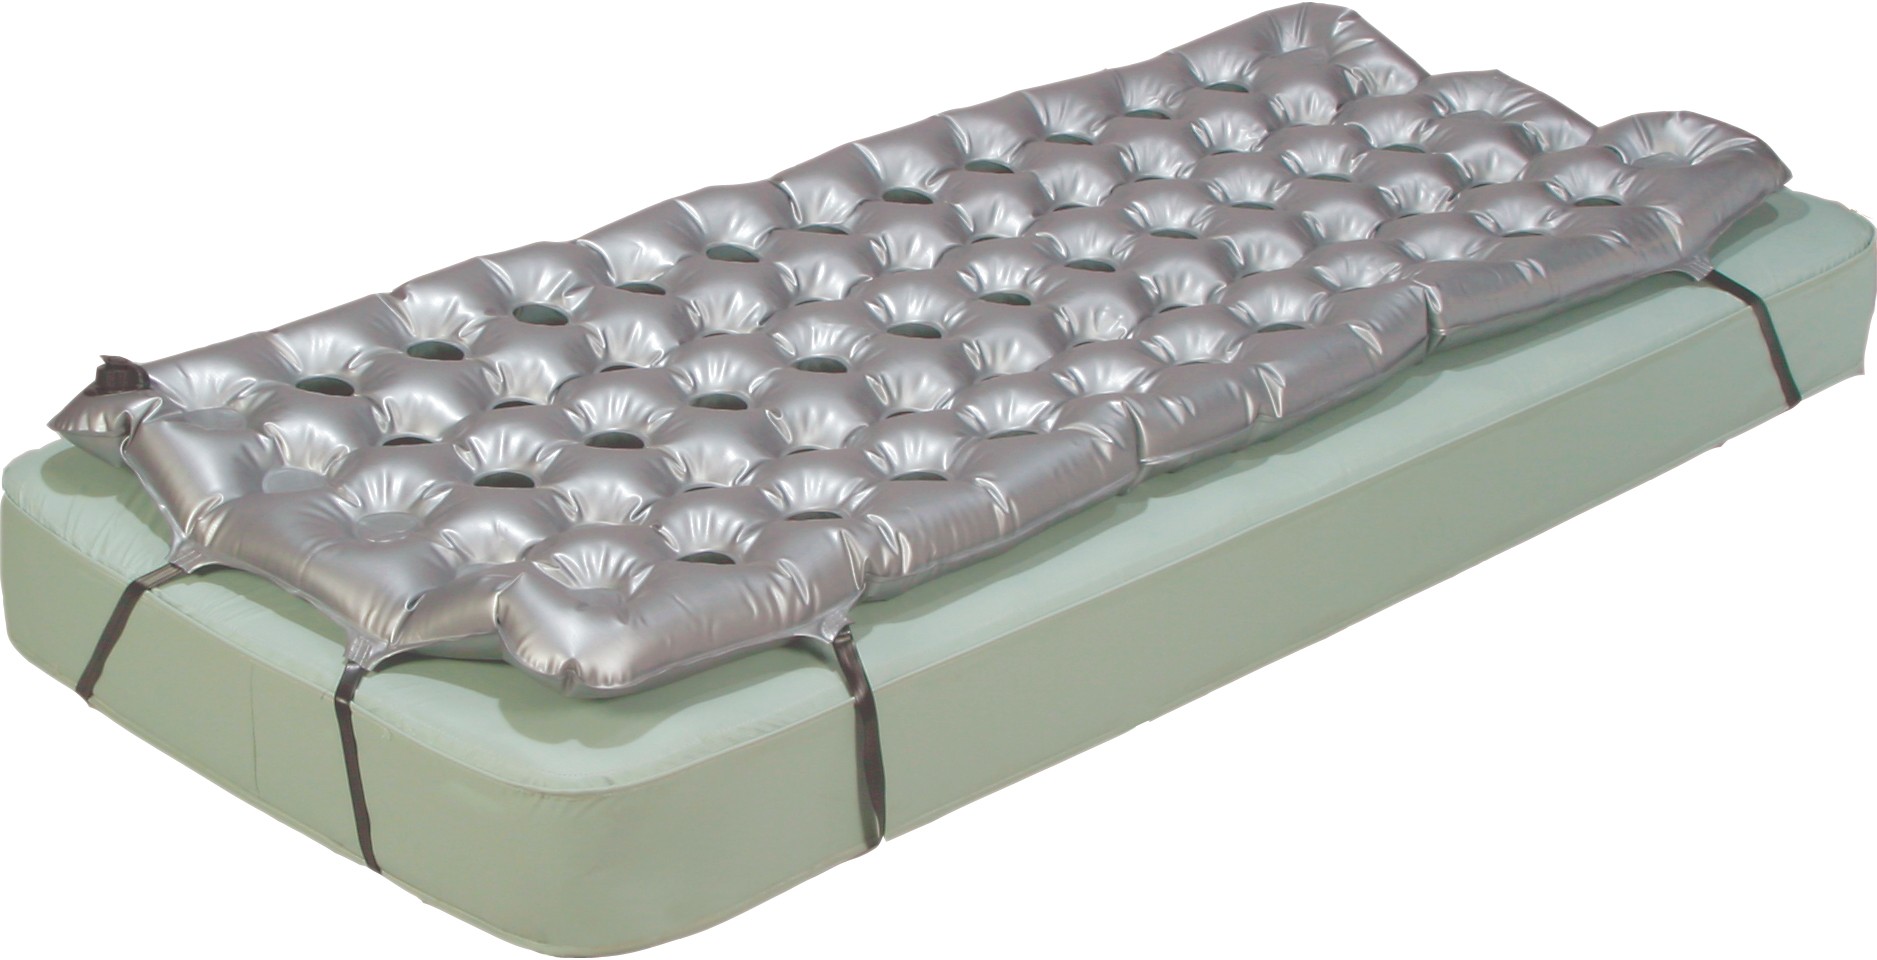 heat seal air mattress